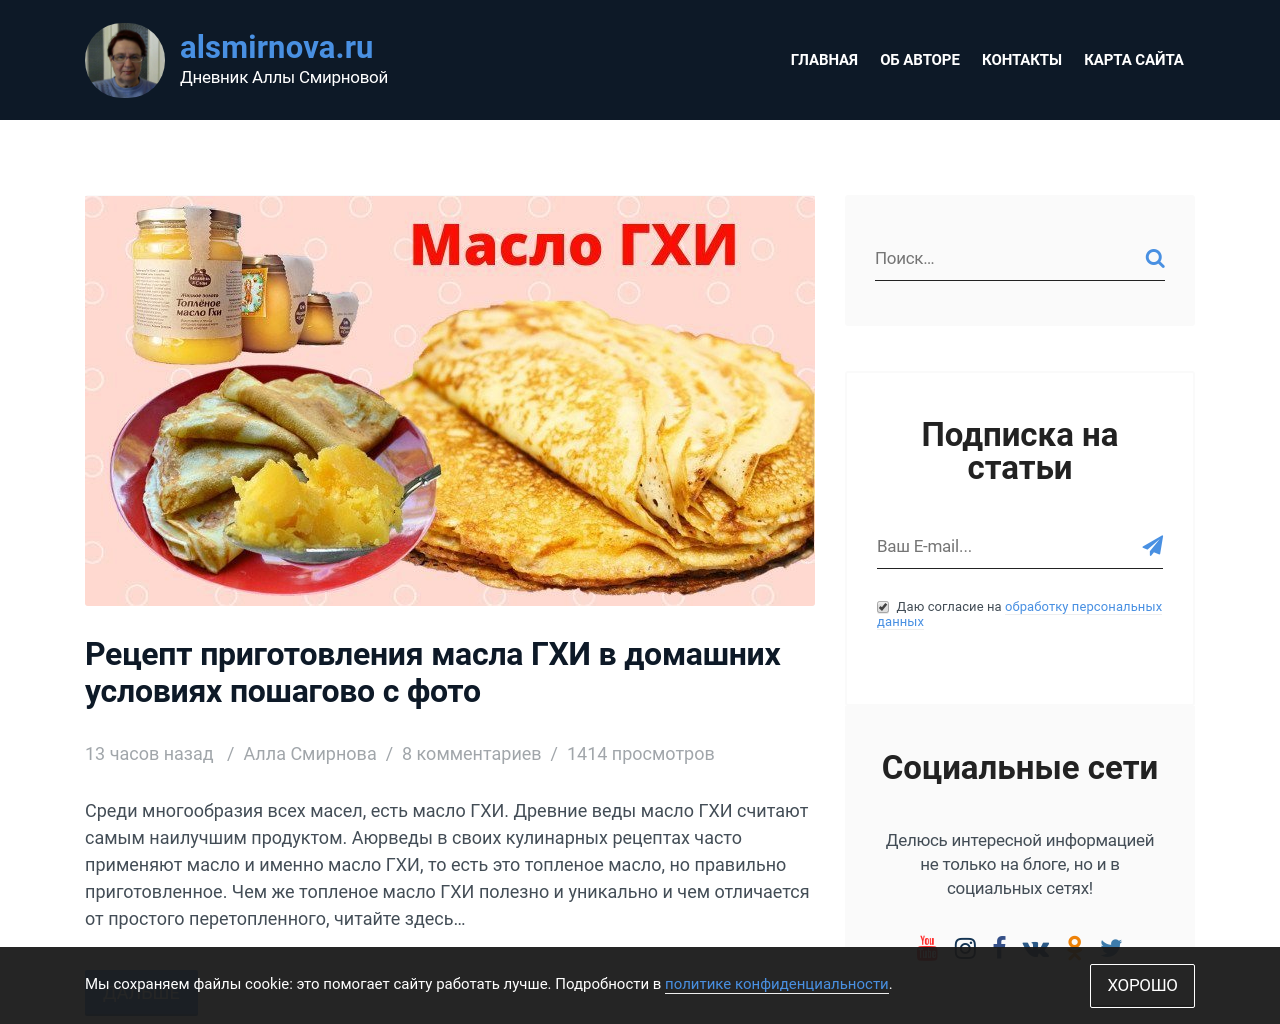 Изображение сайта alsmirnova.ru в разрешении 1280x1024